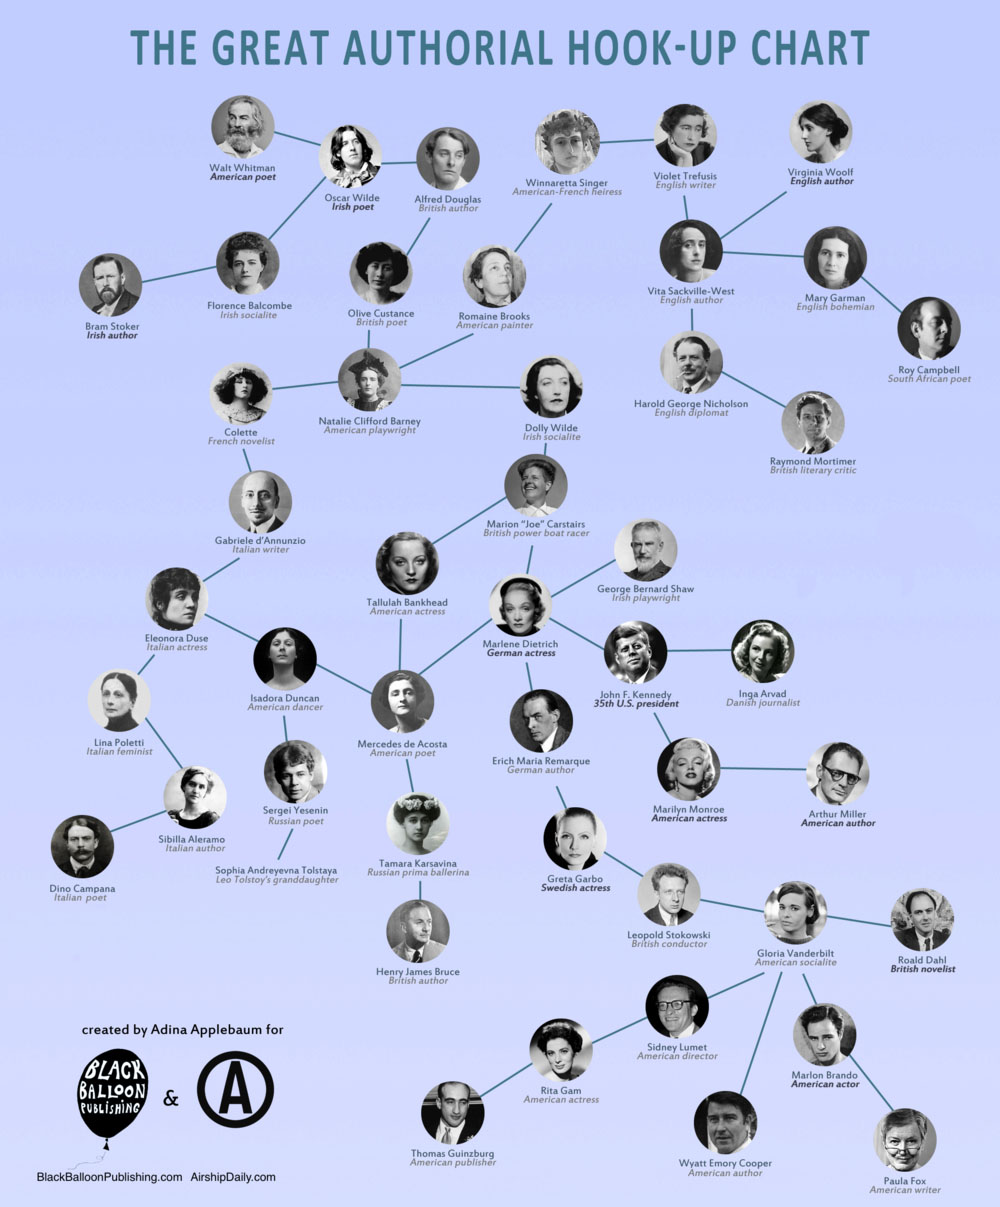 Graficul care ne arata dinamica relatiilor amoroase dintre scriitorii clasici si diferite celebritati